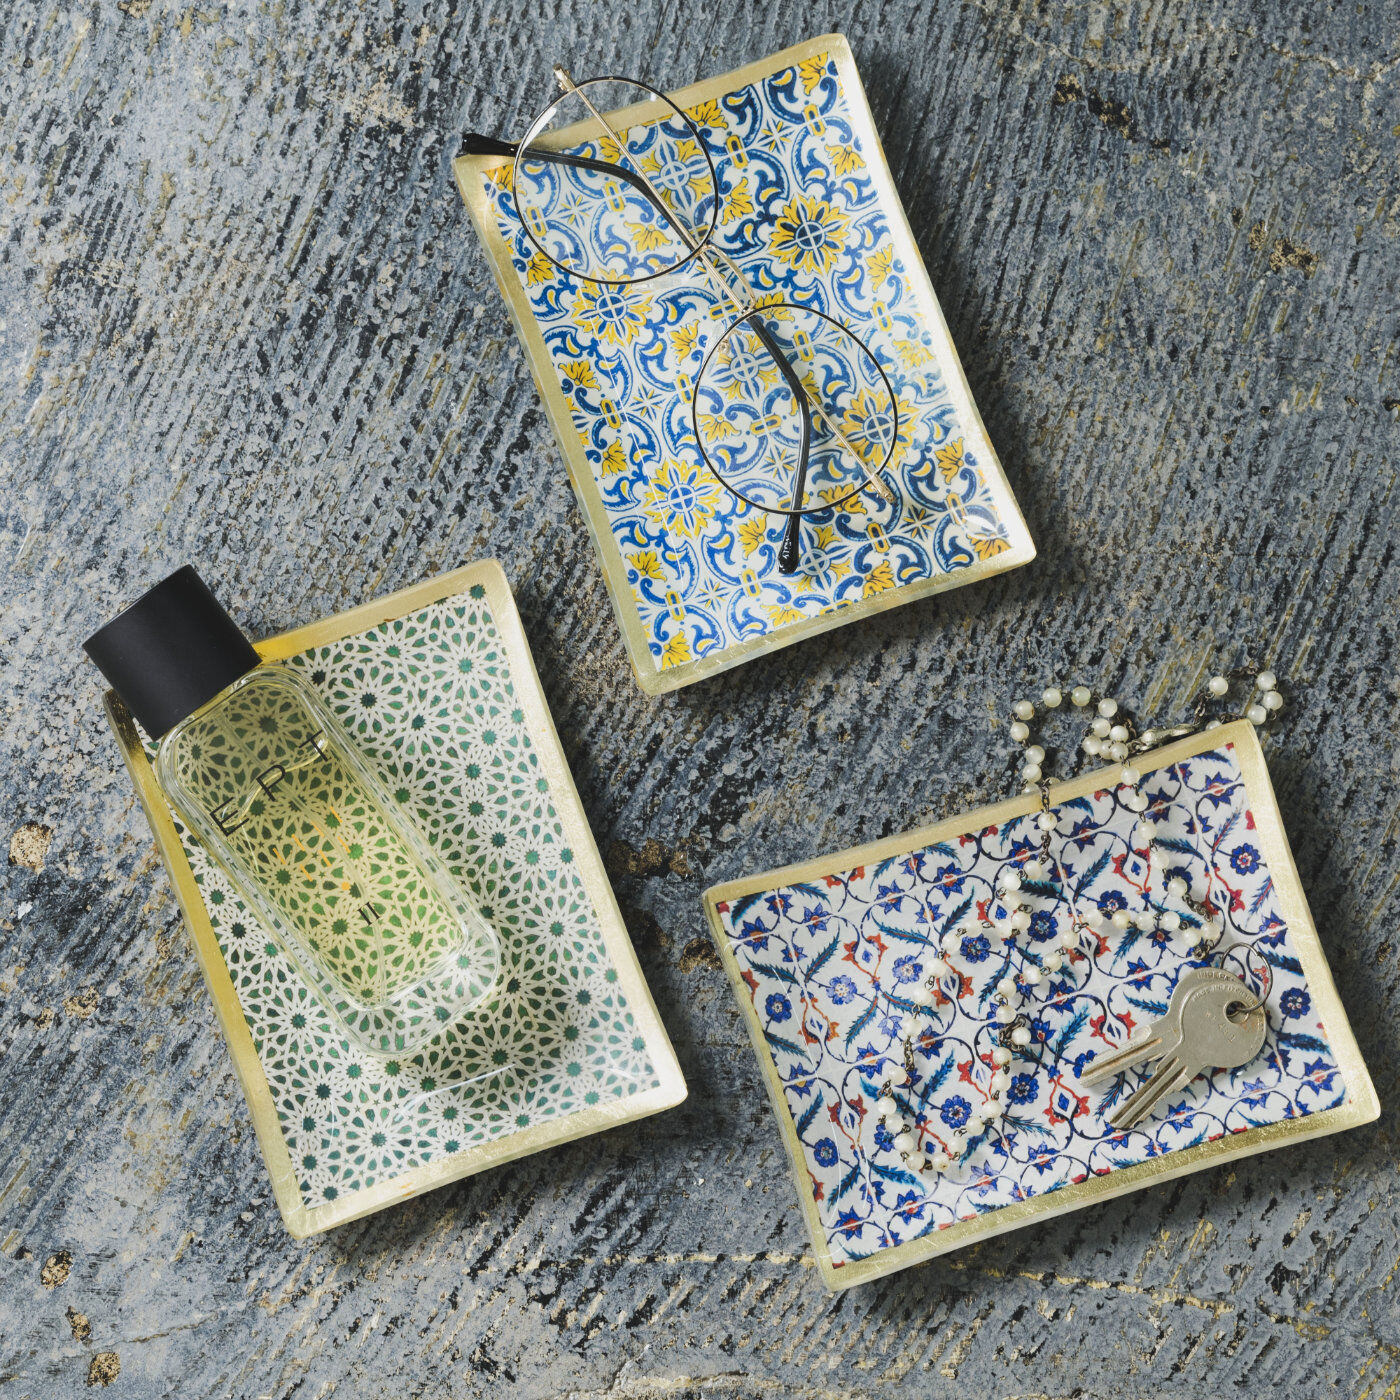 SeeMONO|アラベスク模様がかわいいガラストレイ〈ＲＥＣＴＡＮＧＬＥ〉|香りものなどをまとめる場所としても。